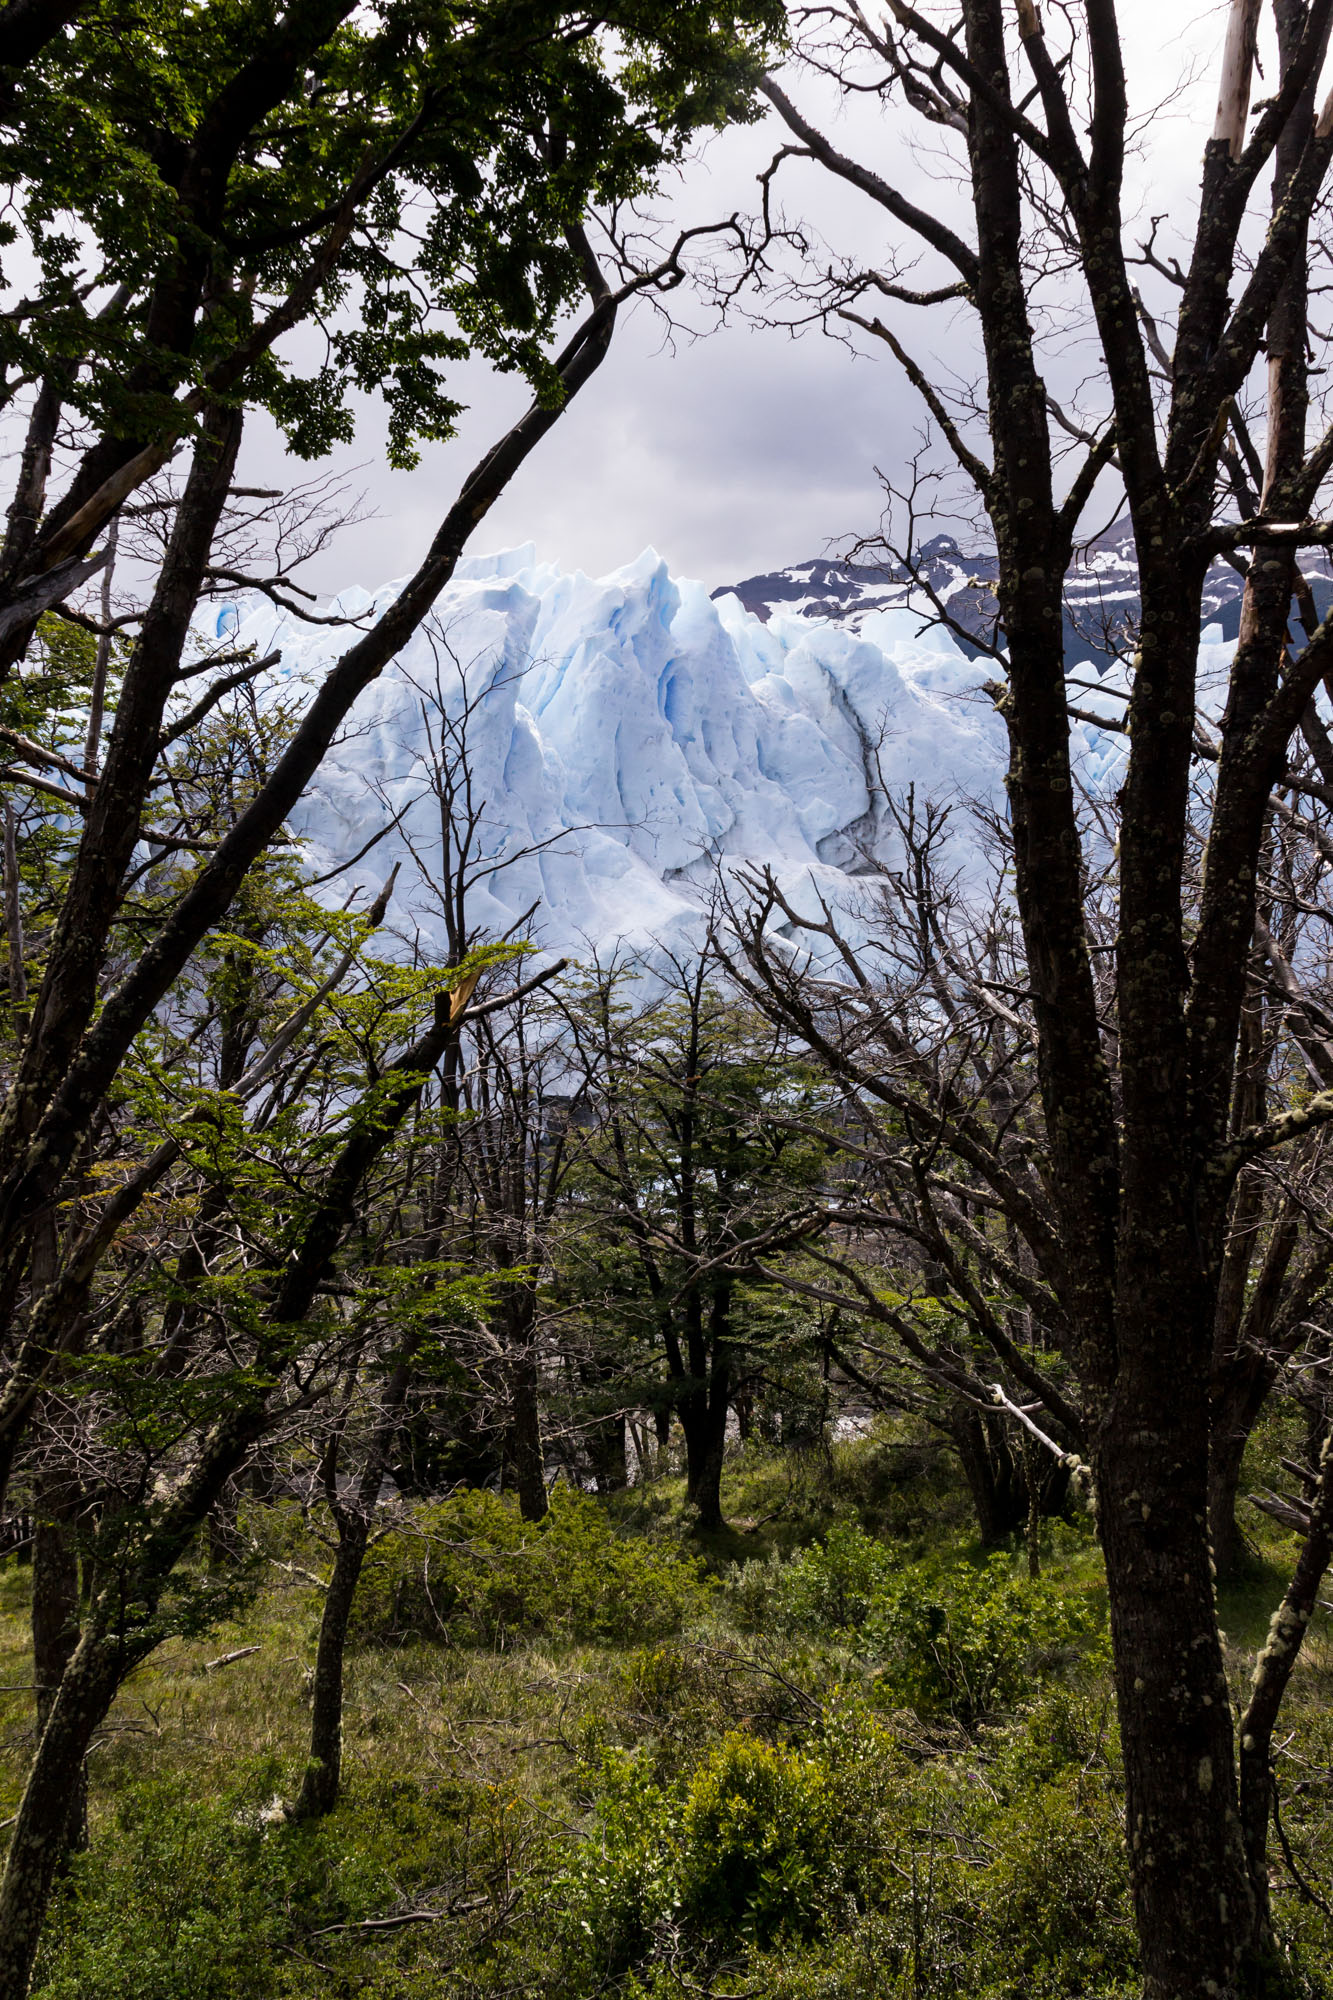 southern patagonia trekking el calafate glacier perito moreno